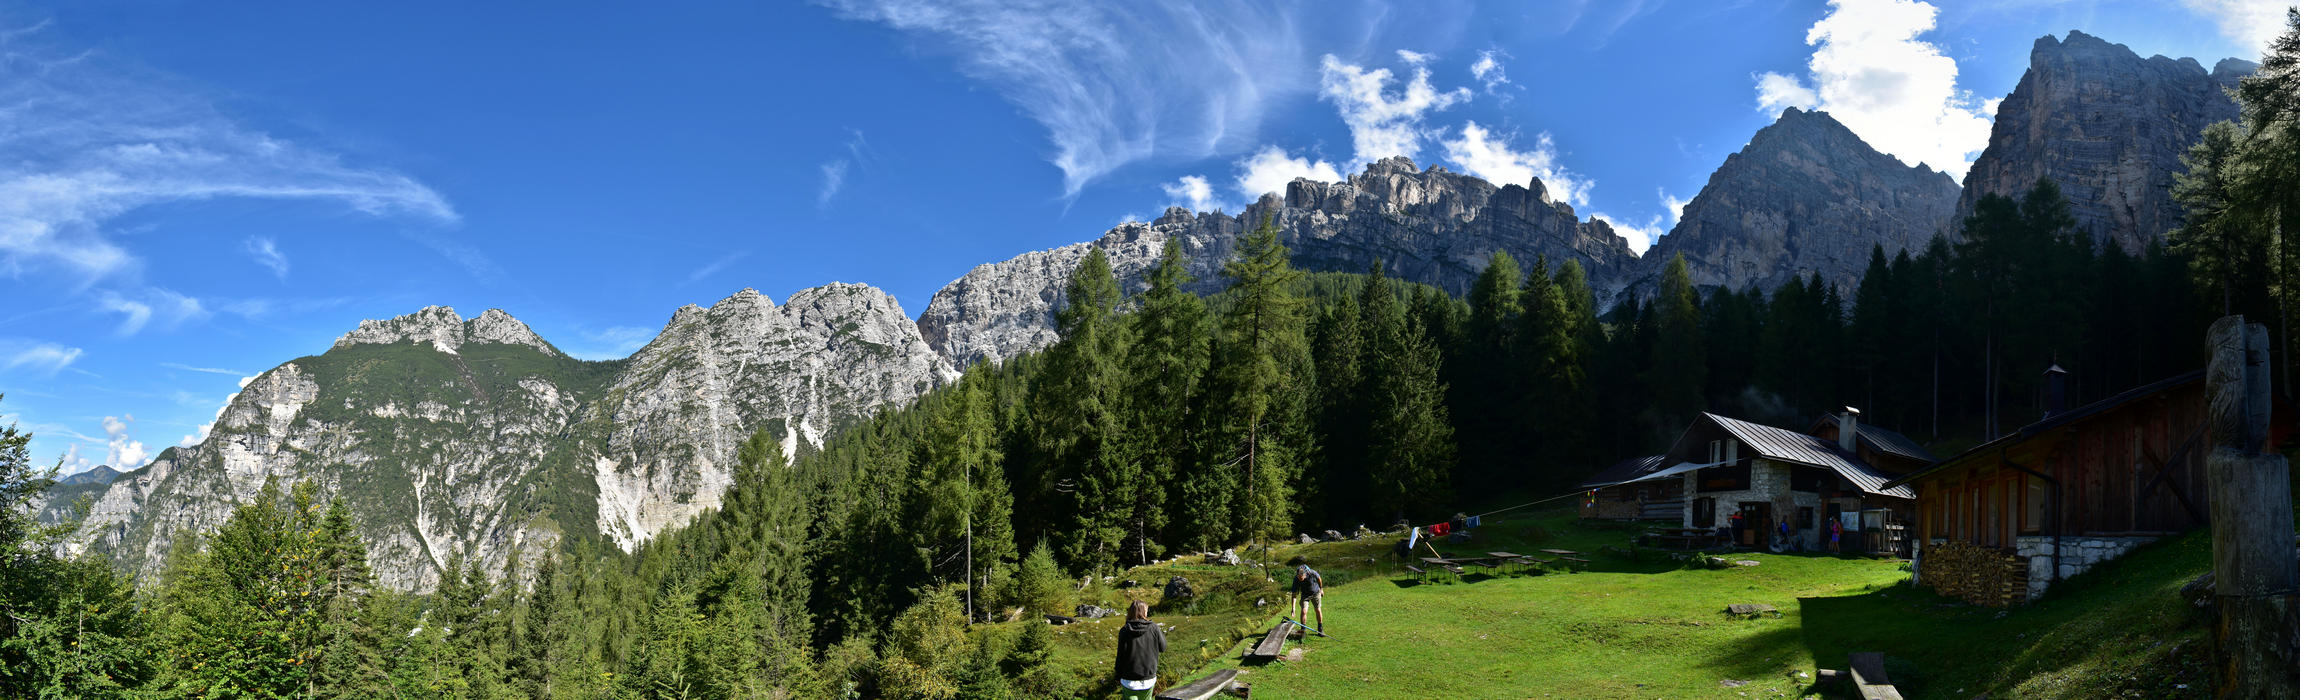 rifugio Casera Bosconero, Val di Zoldo, Dolomiti